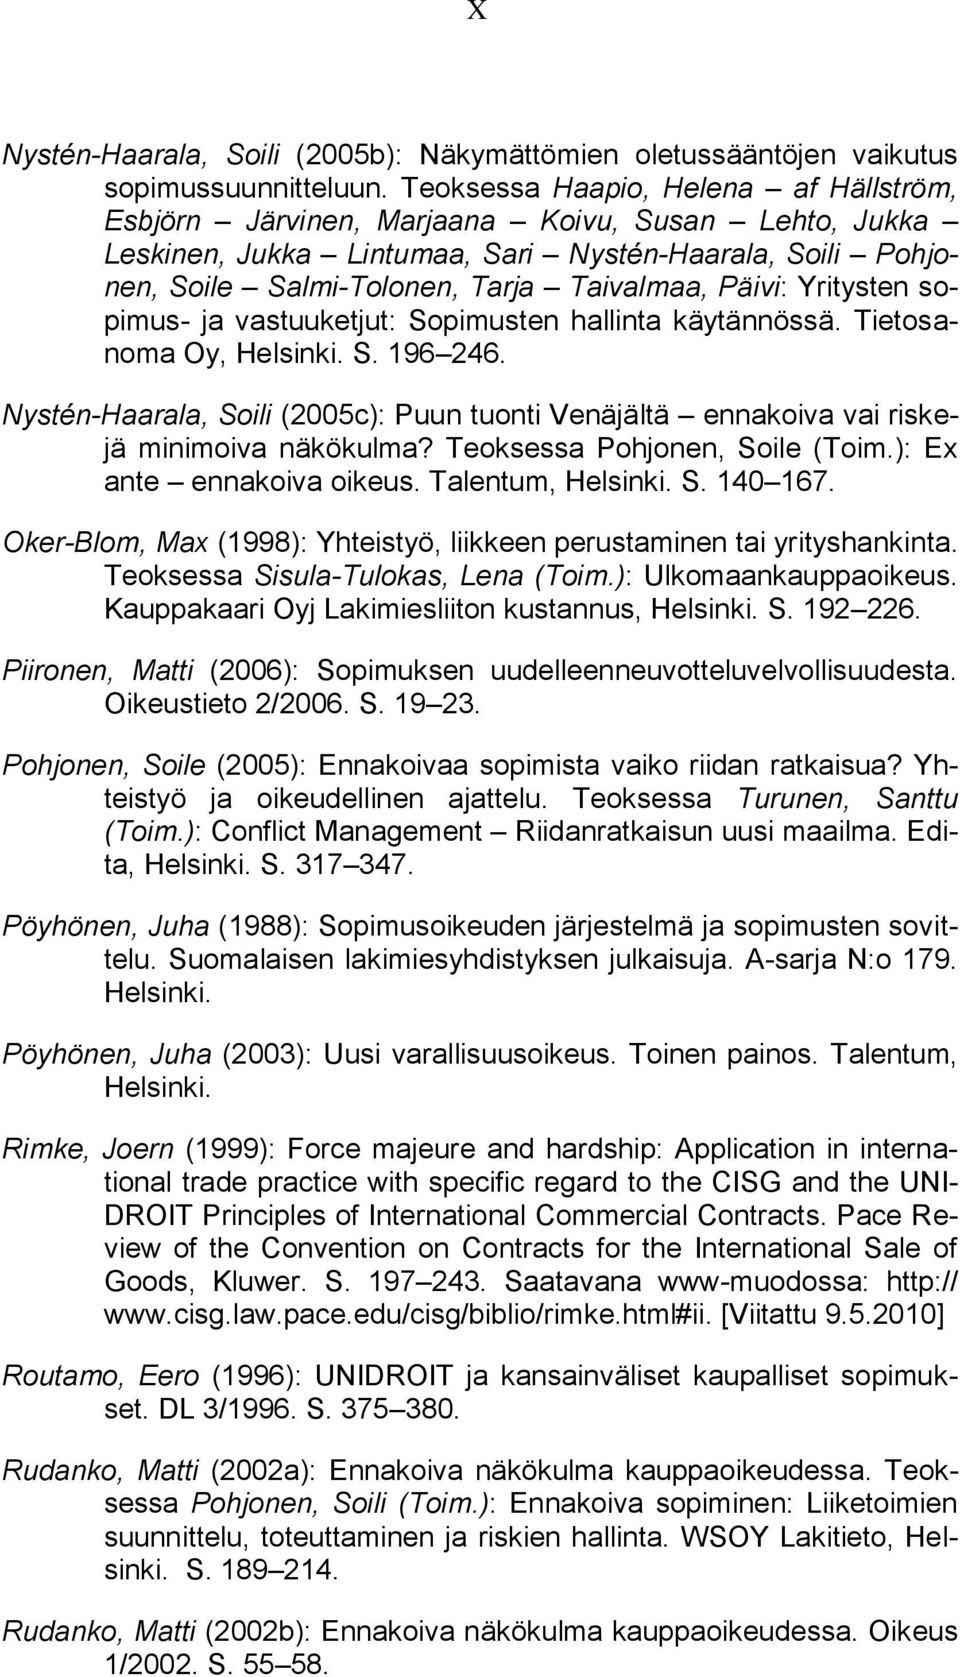 Yritysten sopimus- ja vastuuketjut: Sopimusten hallinta käytännössä. Tietosanoma Oy, Helsinki. S. 196 246.